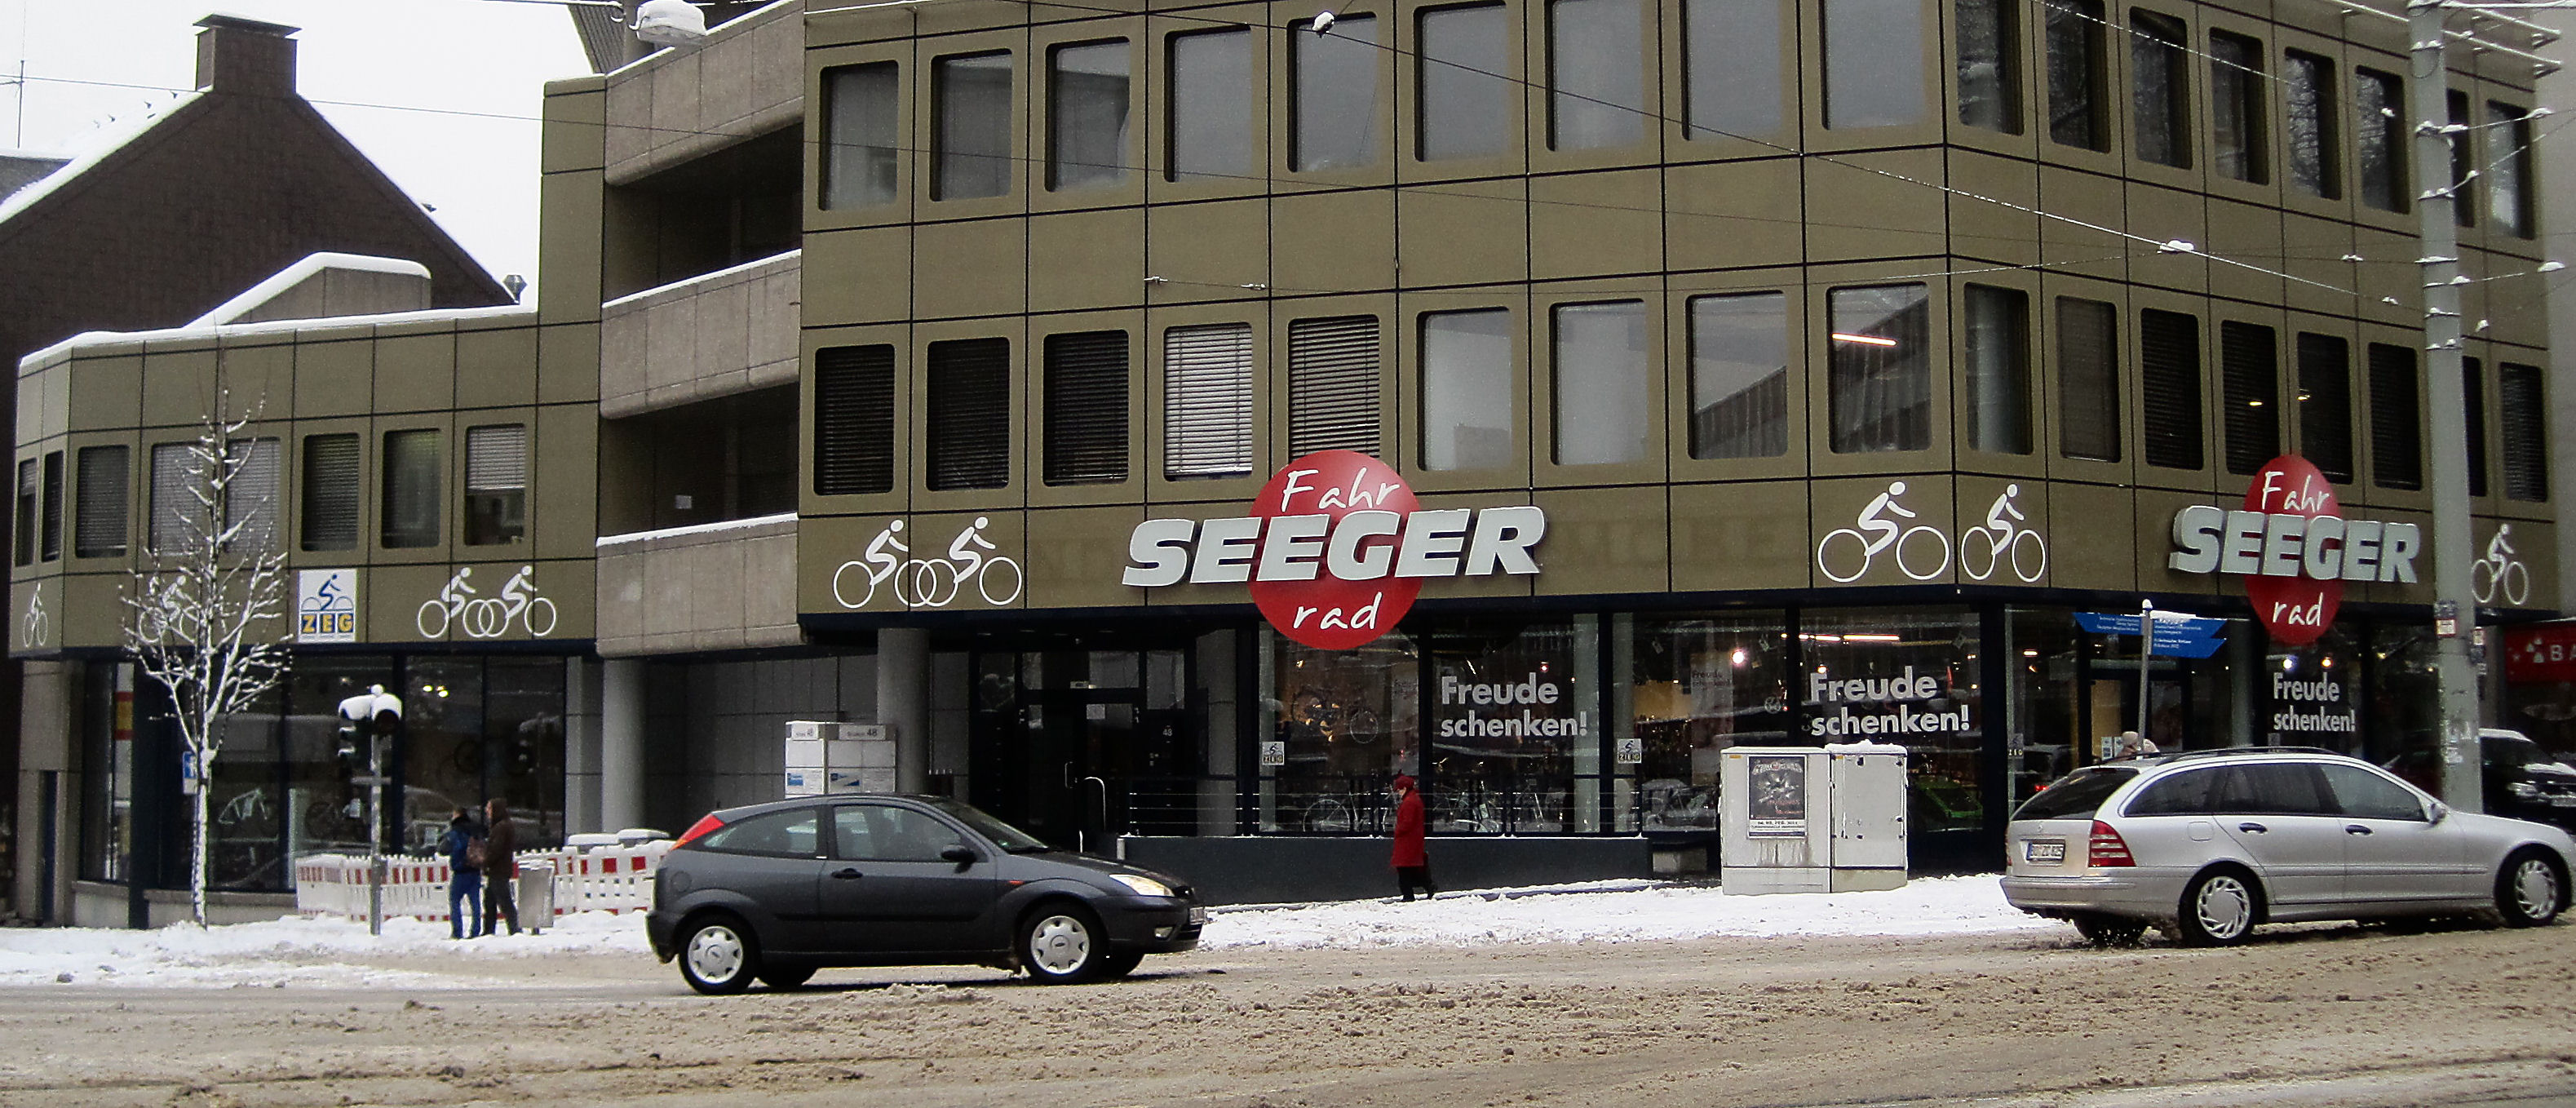 Fahrrad Seeger in 44787 Bochum-Innenstadt